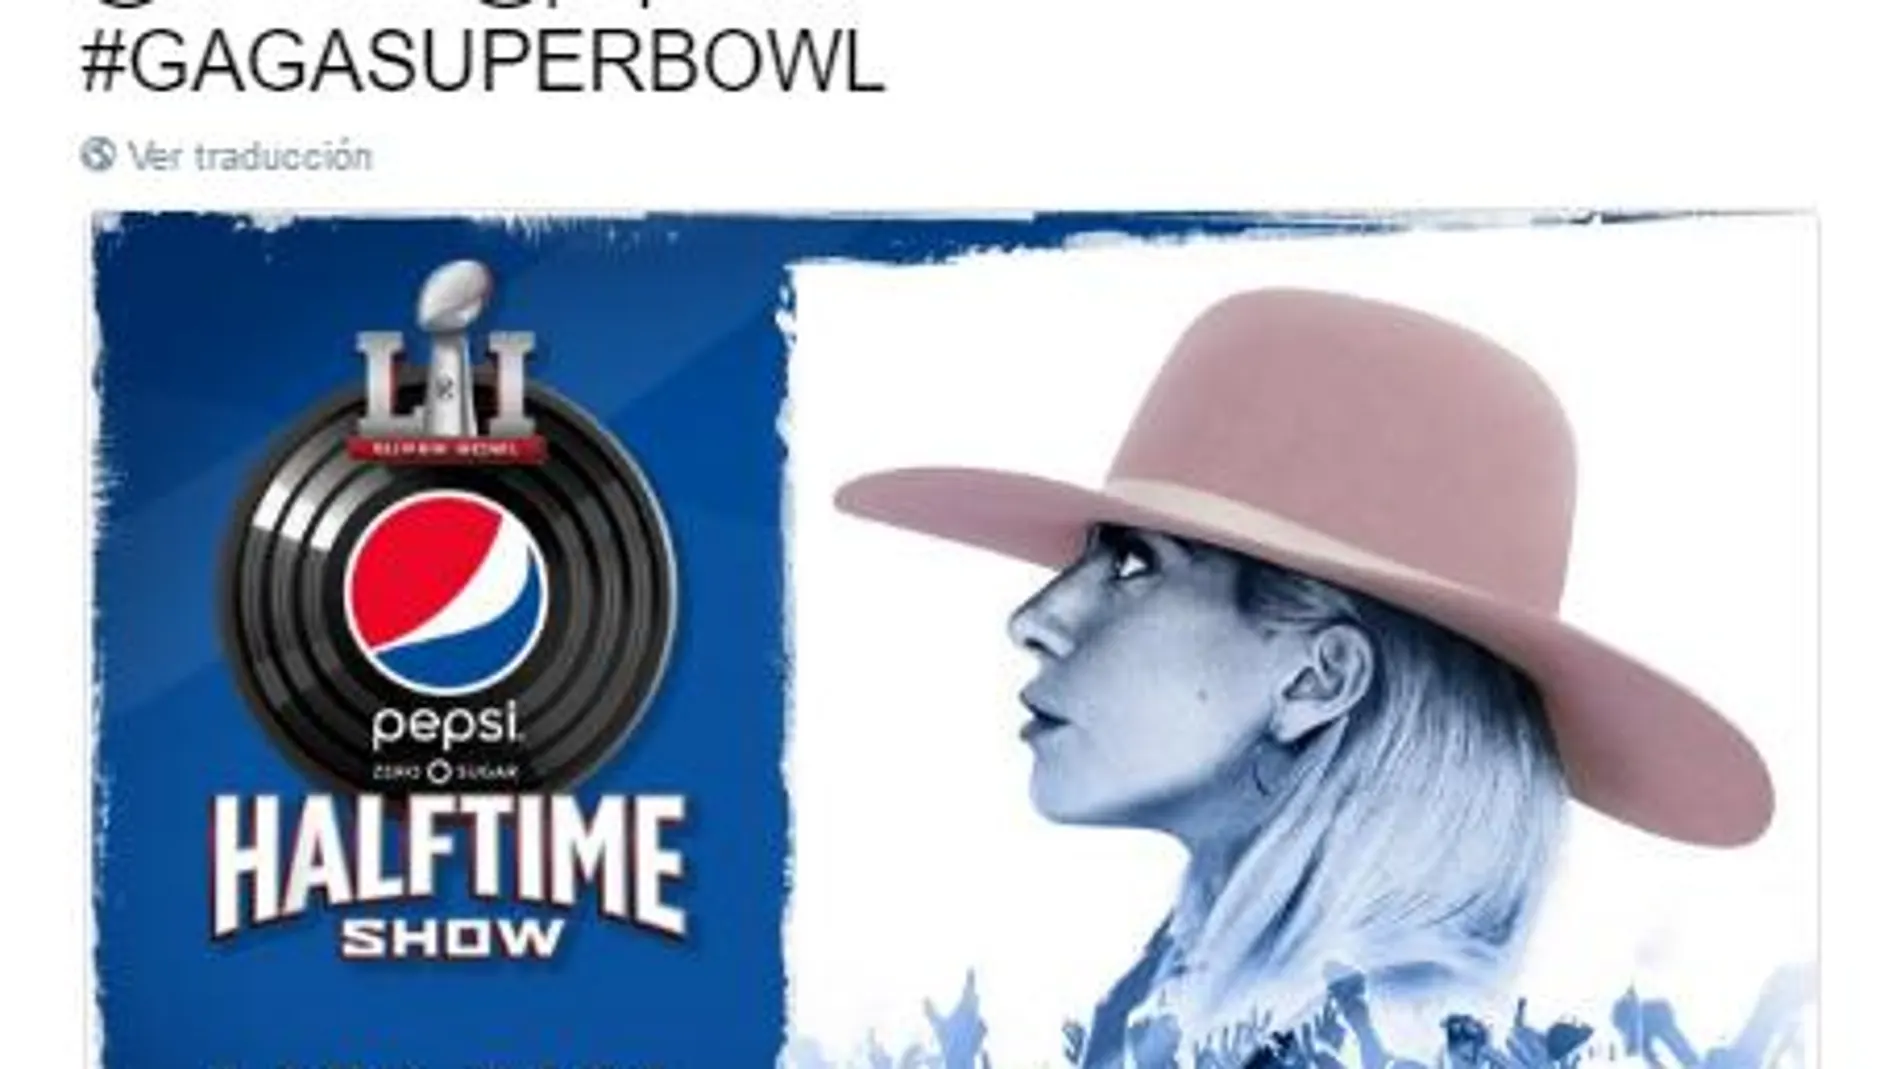 Lady Gaga actuará en el intermedio de la Super Bowl